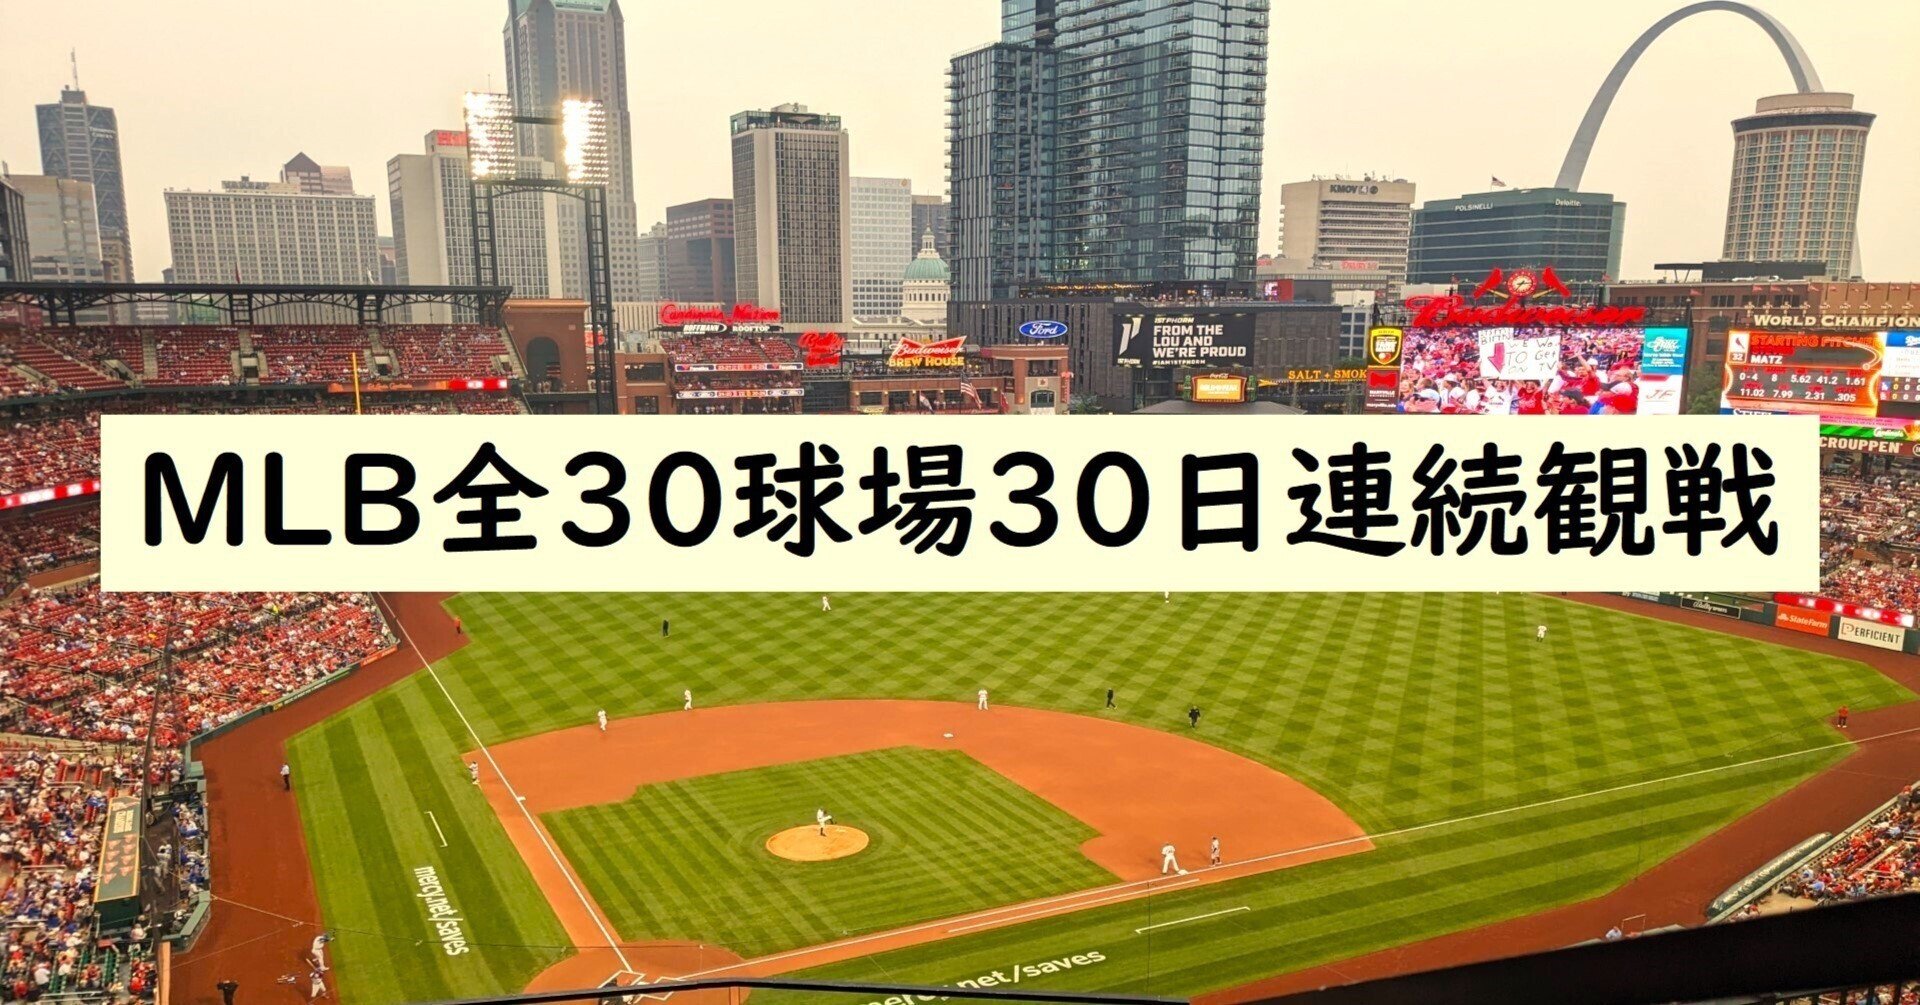 MLB全30球場30日連続観戦 事前-3.ルート｜なかゆき